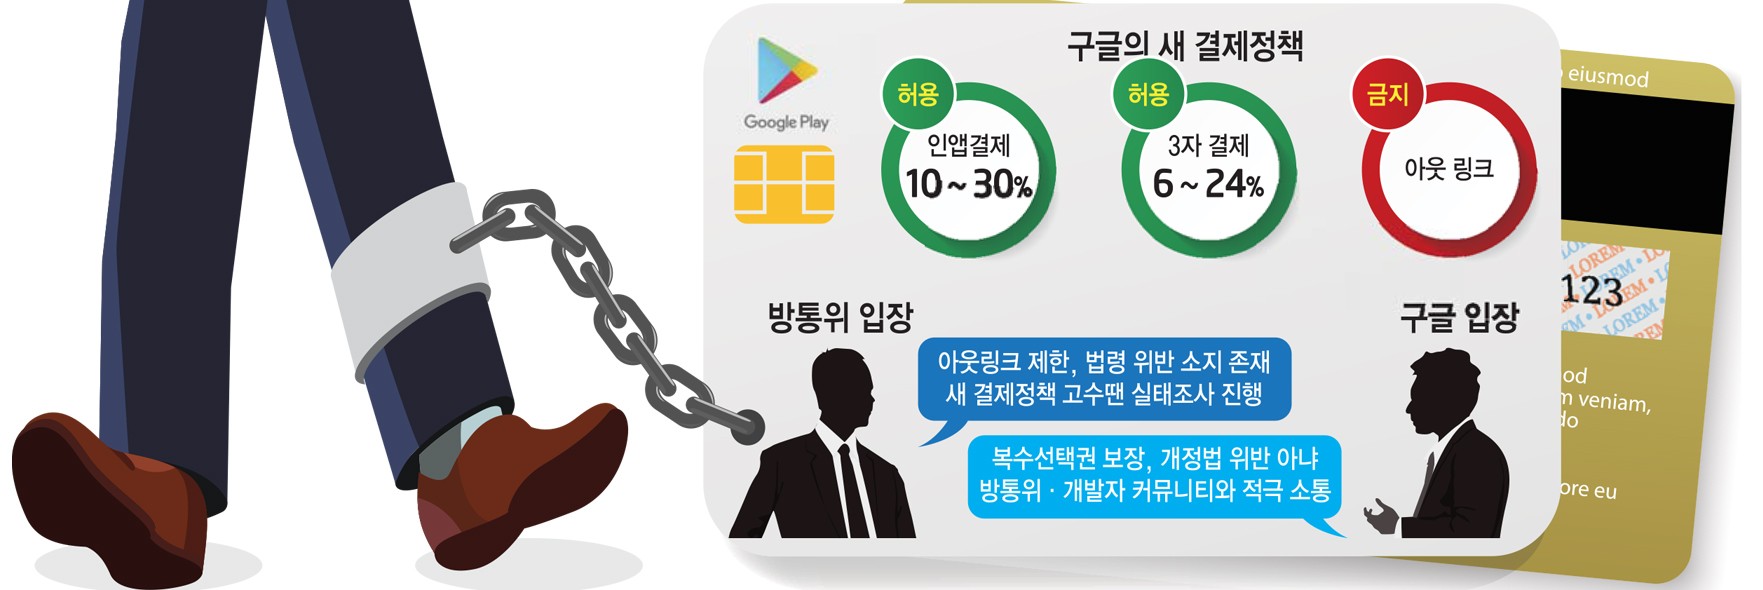 [스페셜리포트]방통위-구글, '특정 결제방식 강제 금지' 해석 이견